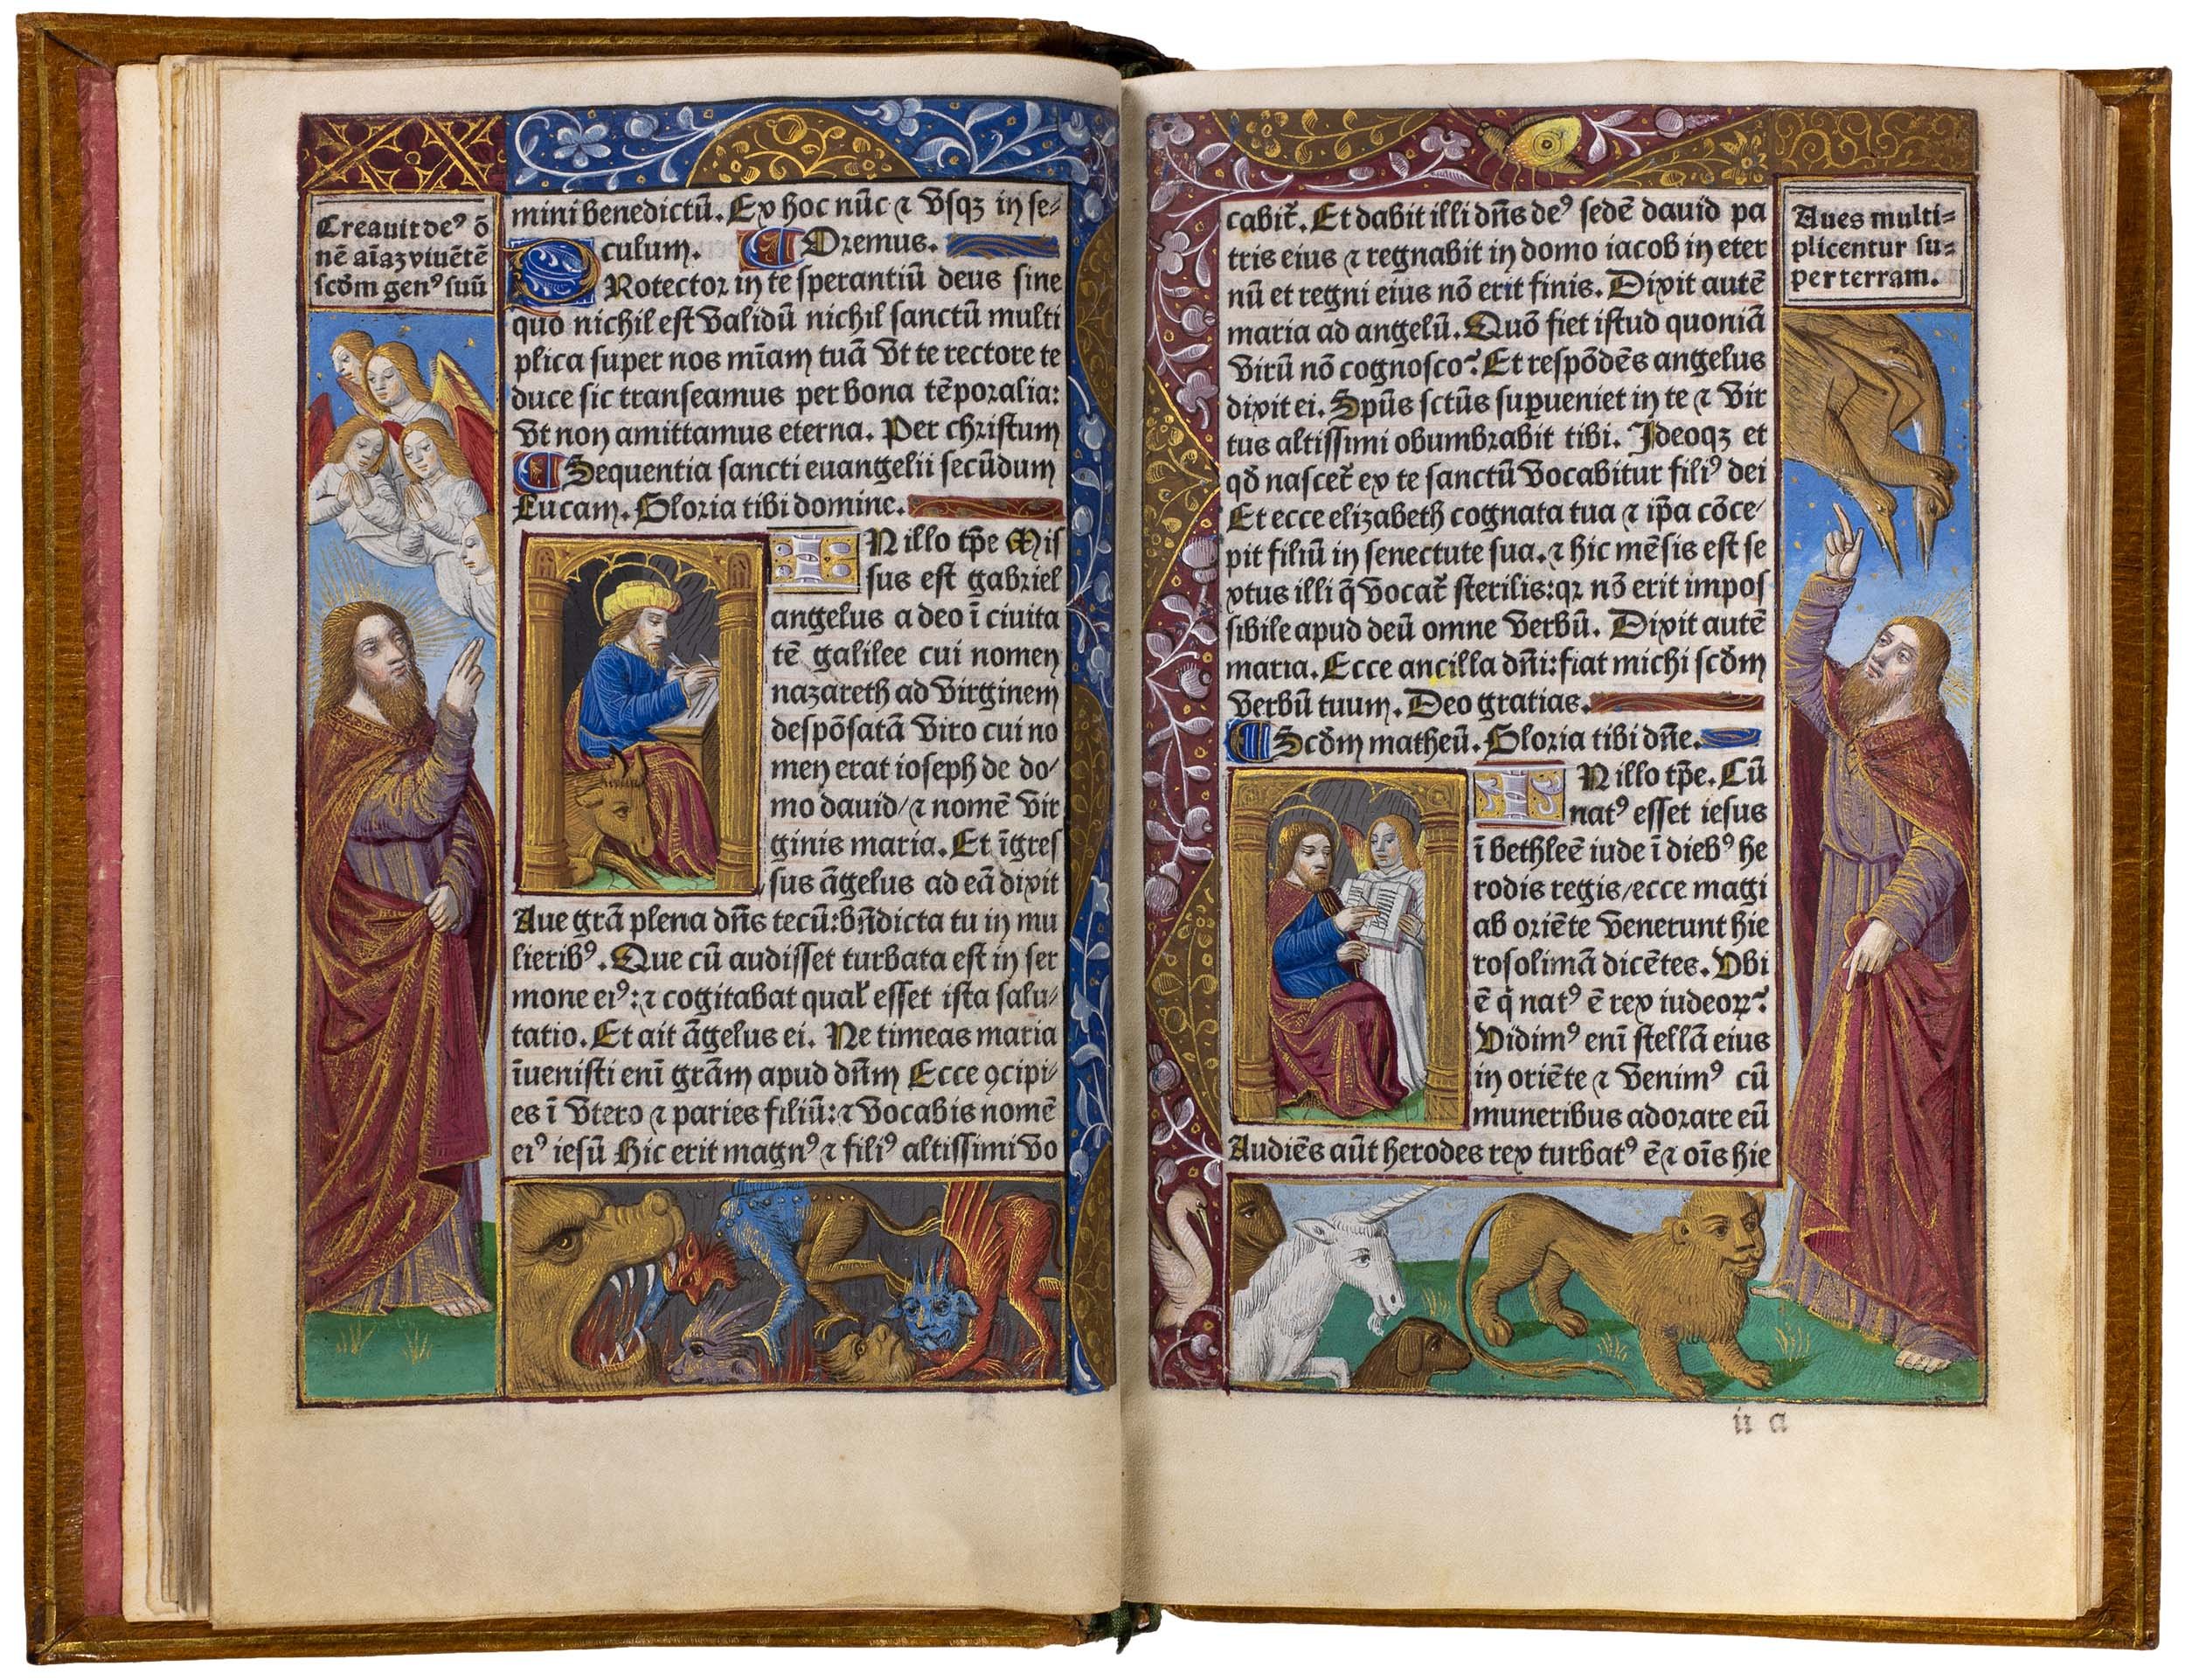 Horae-bmv-pigouchet-19-april-1494-pigouchet-robert-gaguin-illuminated-vellum-copy-14.jpg